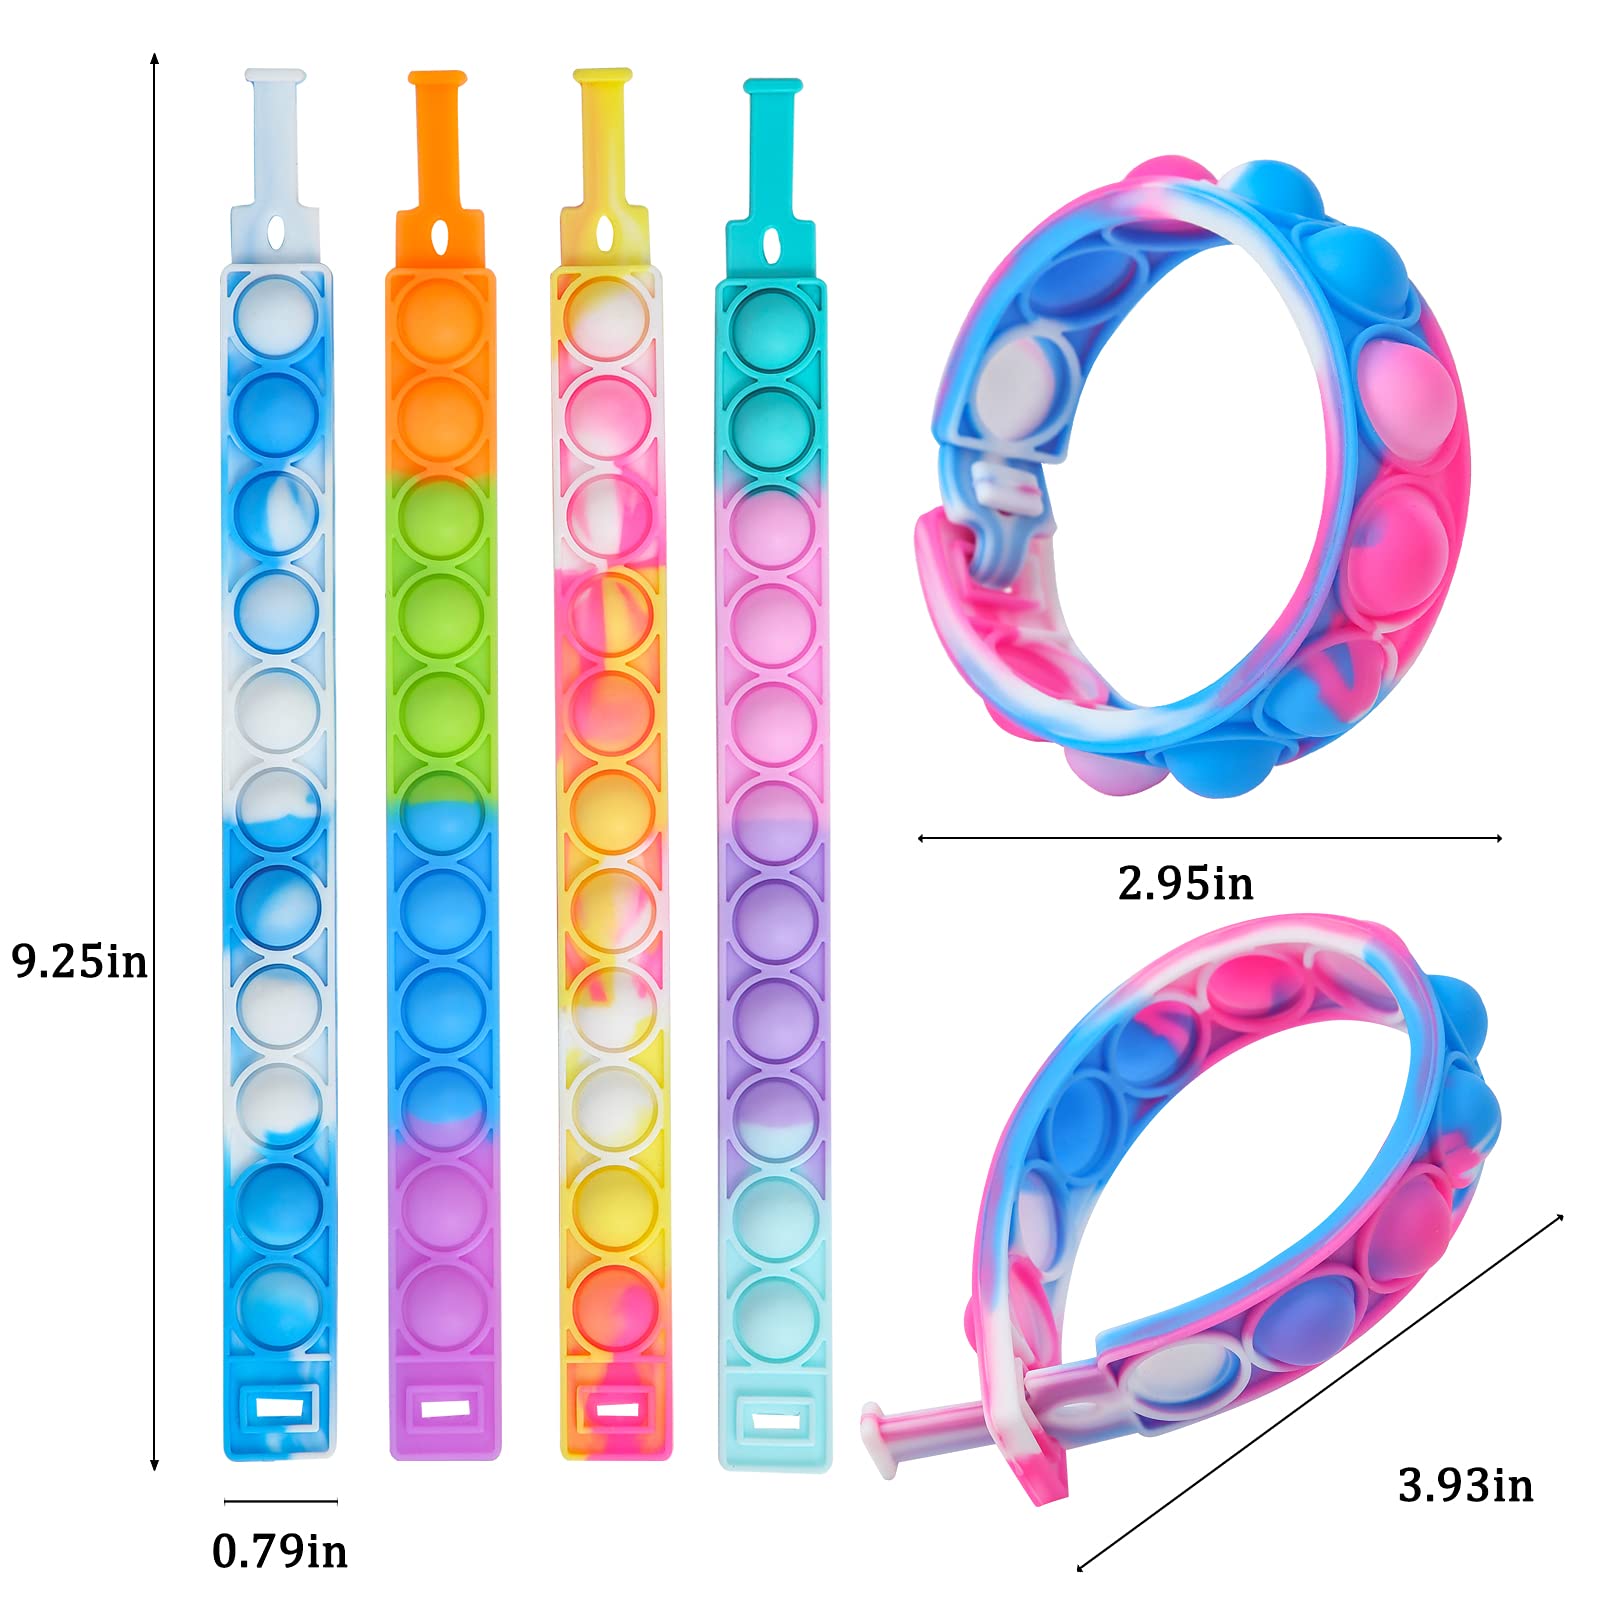 TOMOIN Pop It Bracelets,15 PCS Push Pop Fidget Toy Fidget Bracelet, Durable and Adjustable, Multicolor Stress Relief Finger Press Bracelet for Kids and Adults ADHD ADD Autism